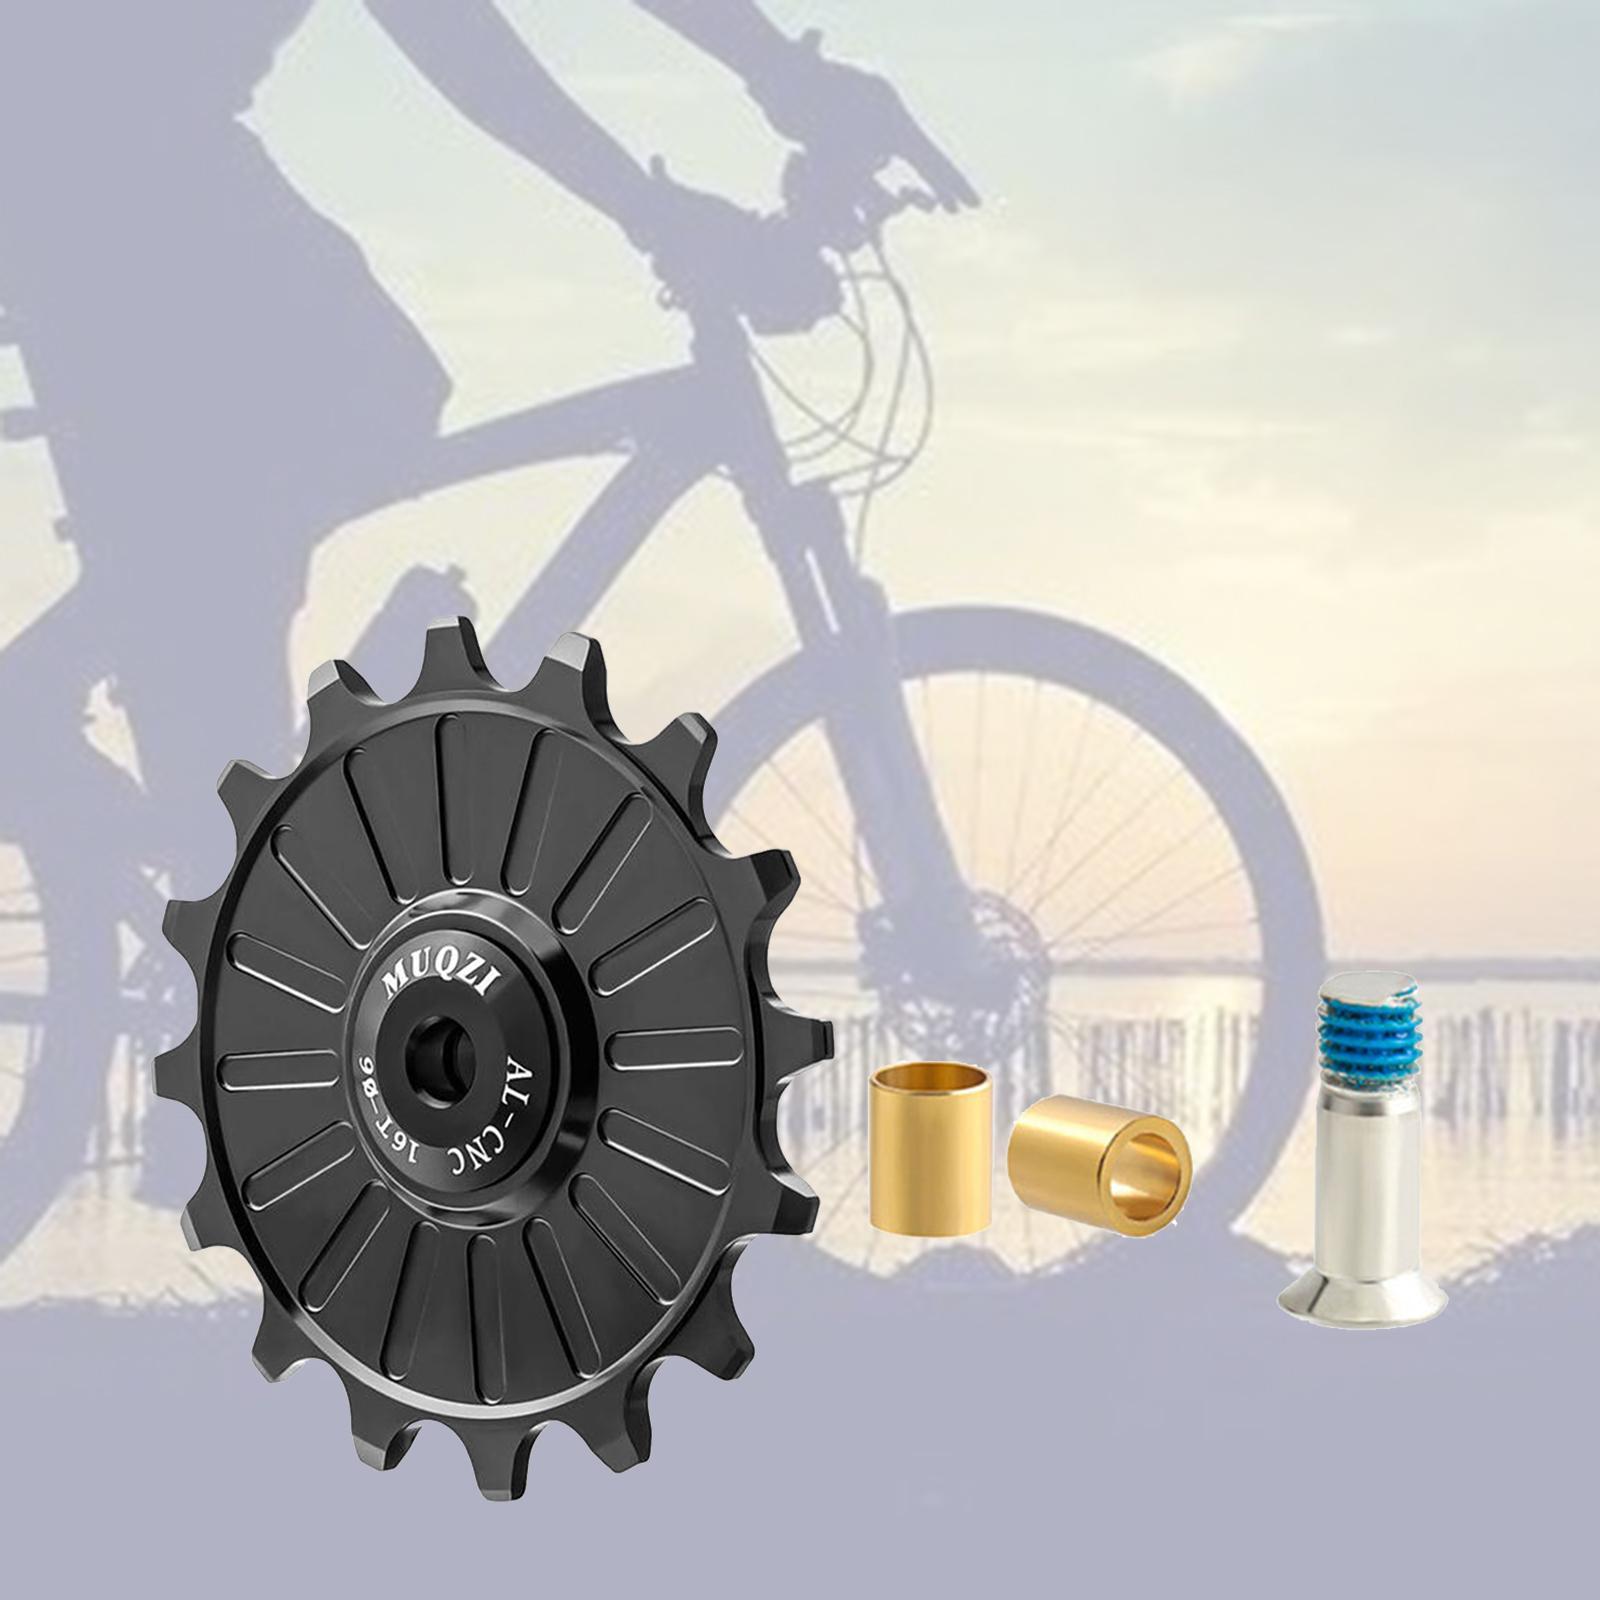 Bike  Wheel,  Alloy  Rear Derailleur Jockey Wheel Rear Derailleur Pulley Bike Accessories